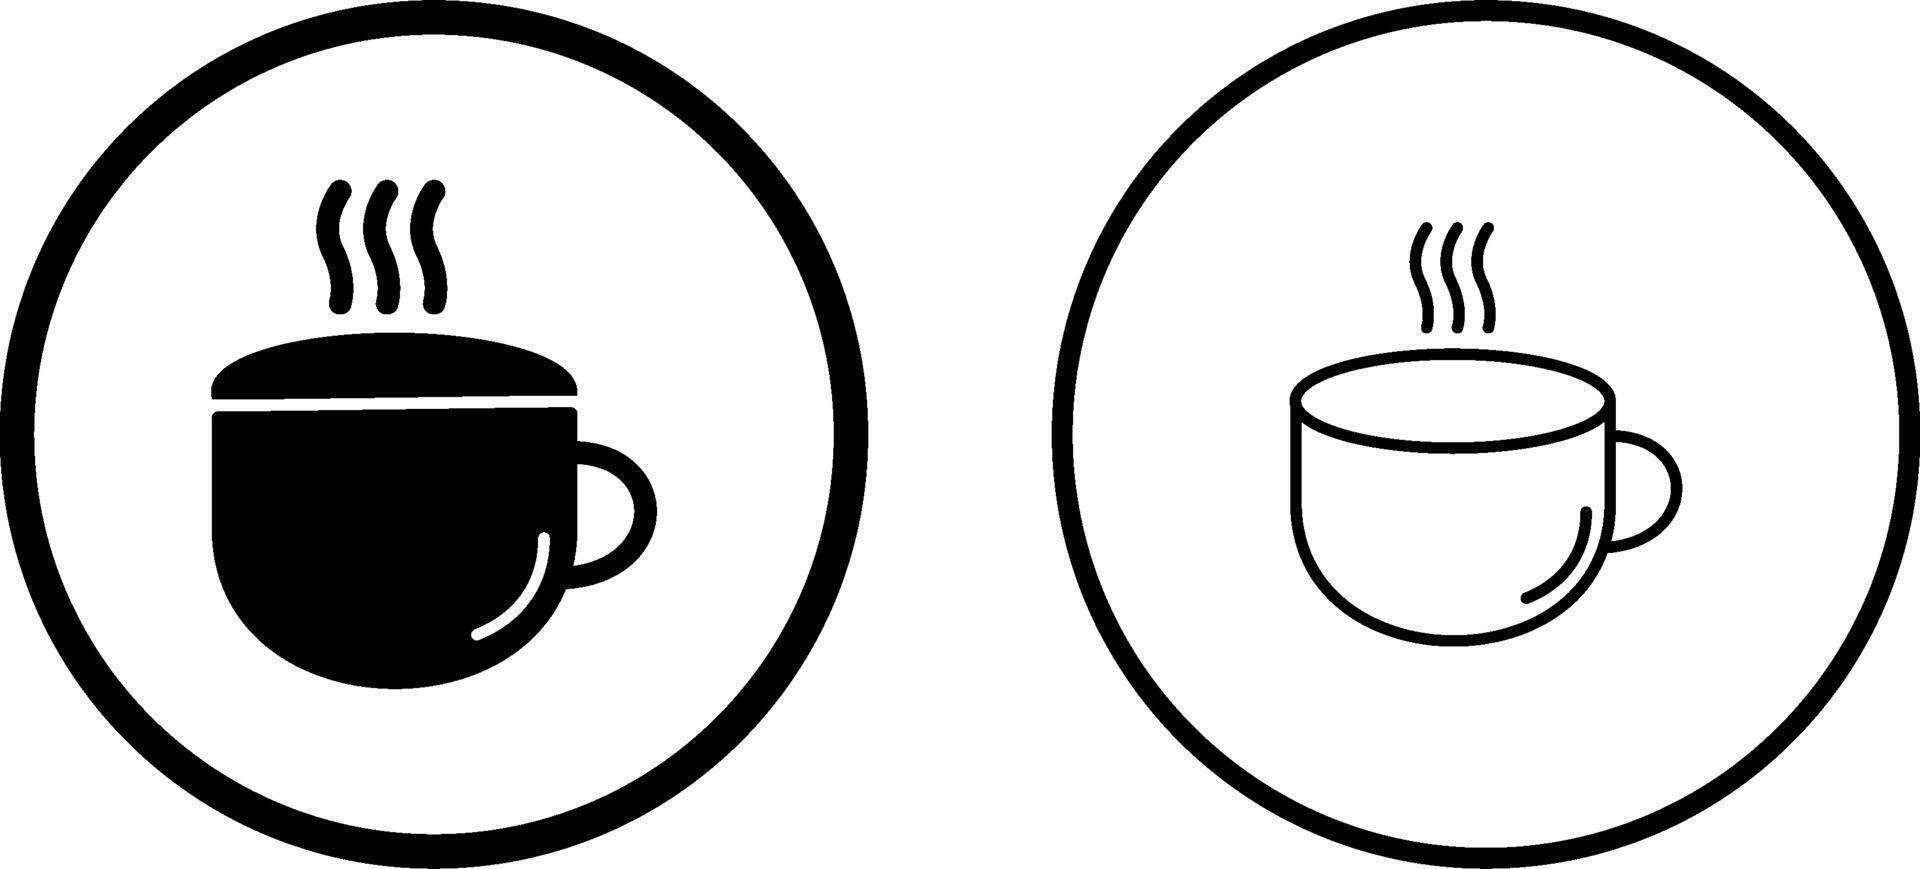 Vektorsymbol für Teetasse vektor